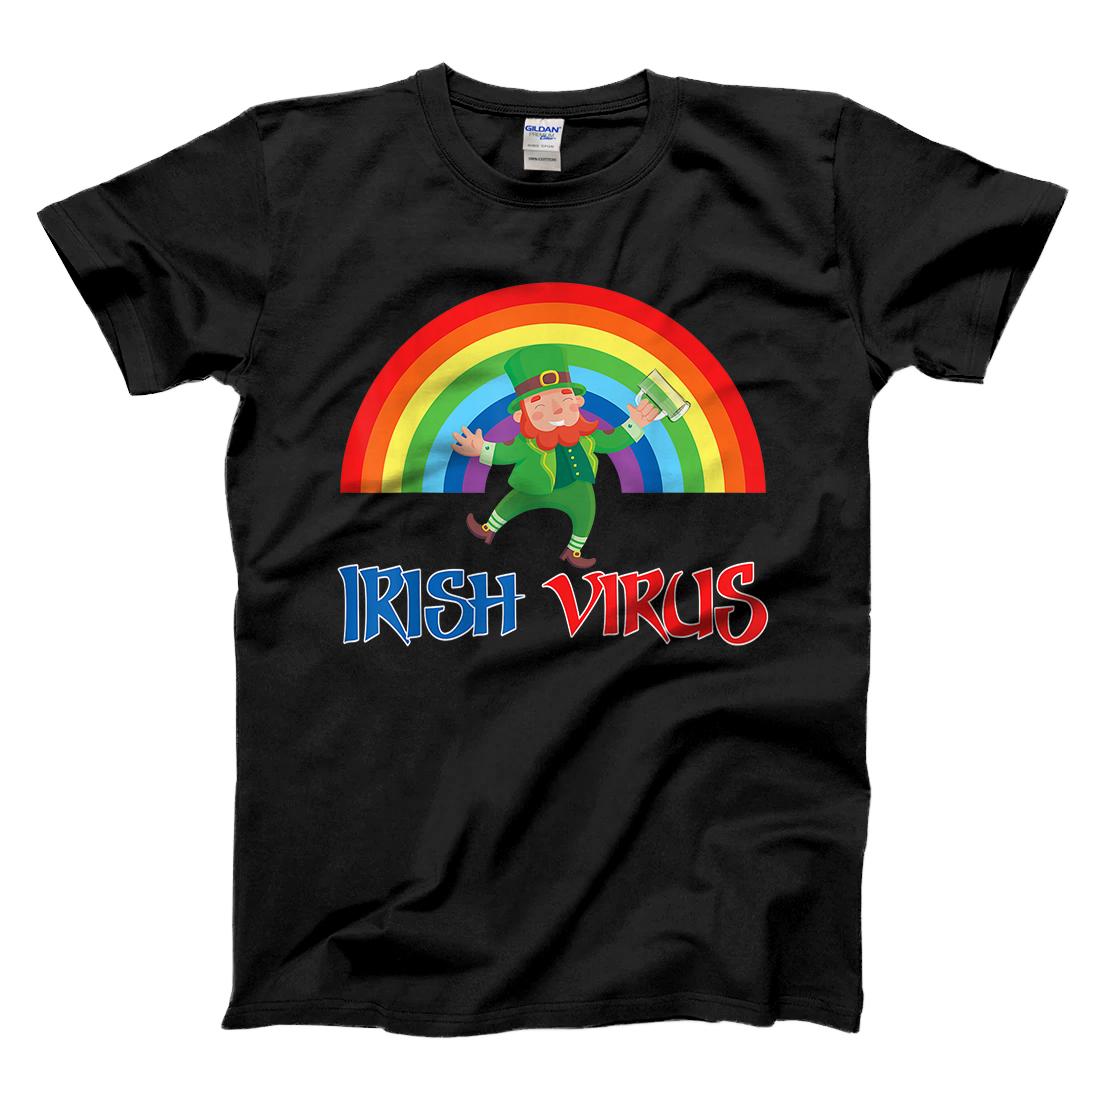 Personalized Irish Virus T-Shirt